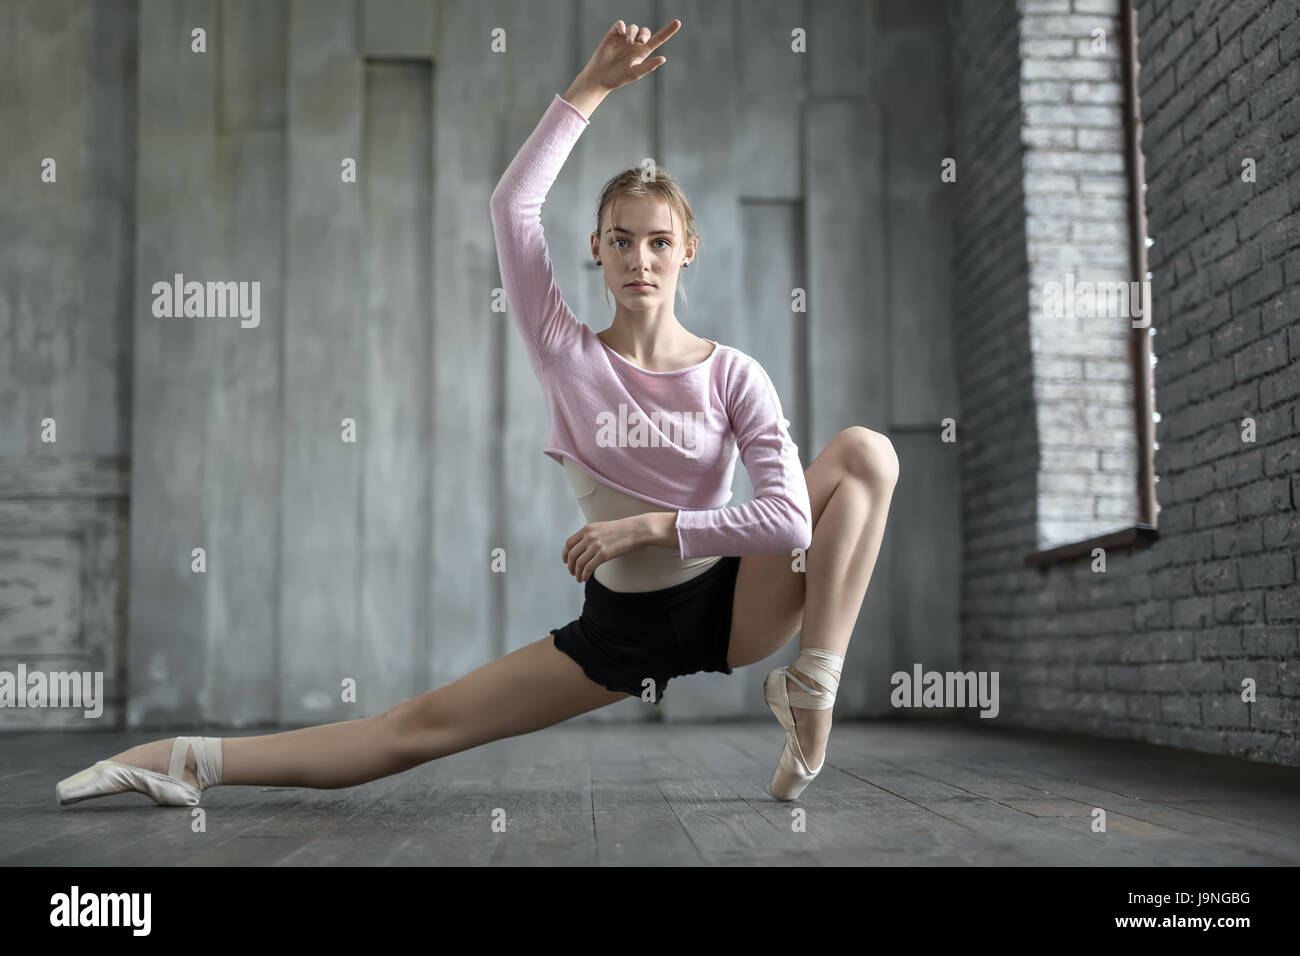 Wunderschöne Ballerina neben dem Fenster auf die graue Wand Hintergrund Hälfte gespalten. Ihr linkes Bein steht auf dem Fuß. Mädchen trägt schwarze Shorts, leichte Trikot Stockfoto